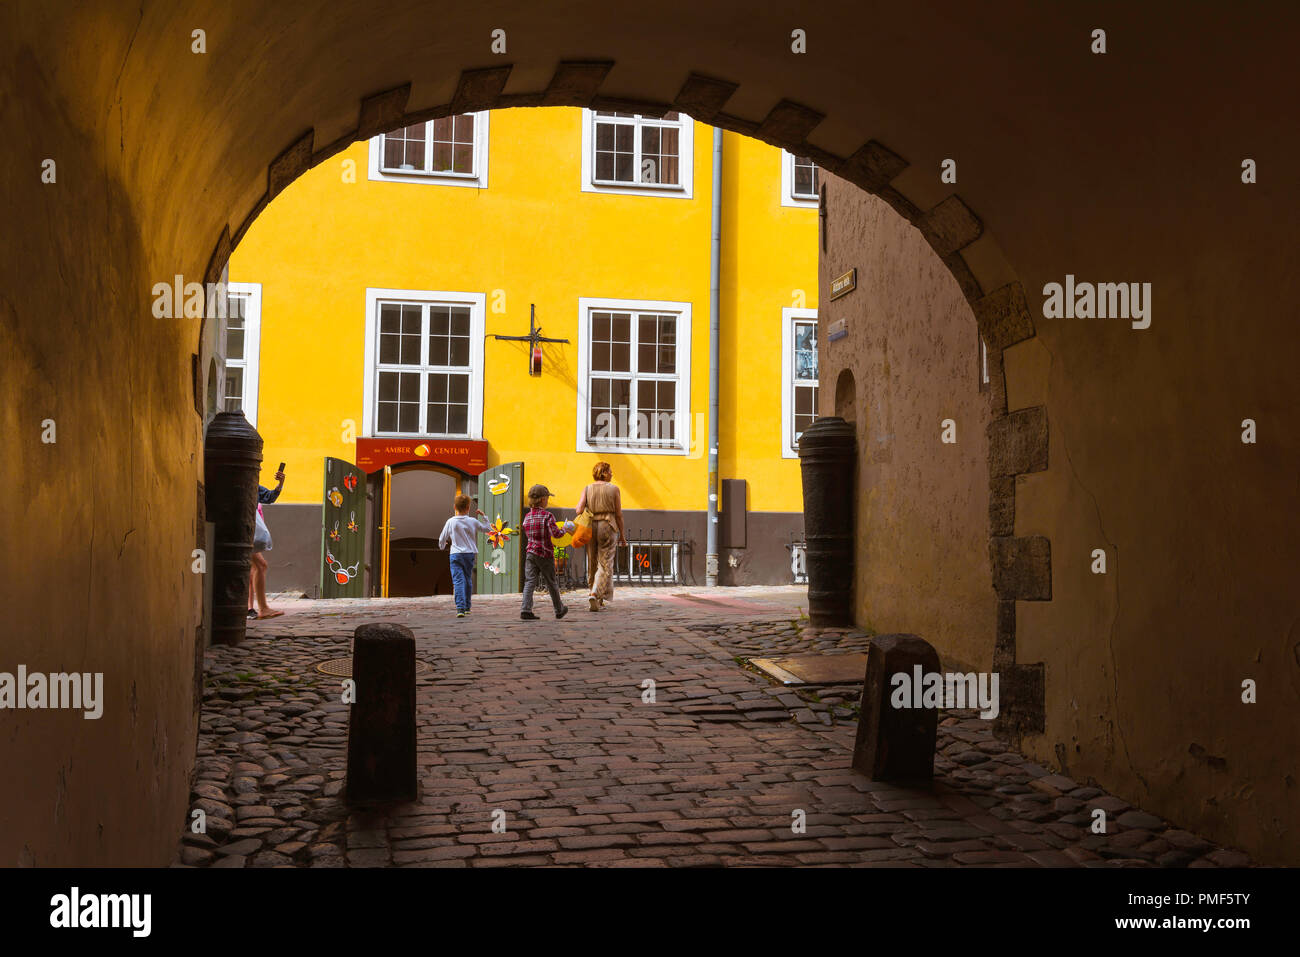 Swedish Gate Riga, vue à travers la porte de la Suédoise rangée de bâtiments colorés jaune connu sous le nom de Jacob's Barracks à Tornu Iela dans la ville médiévale de la vieille ville de Riga. Banque D'Images